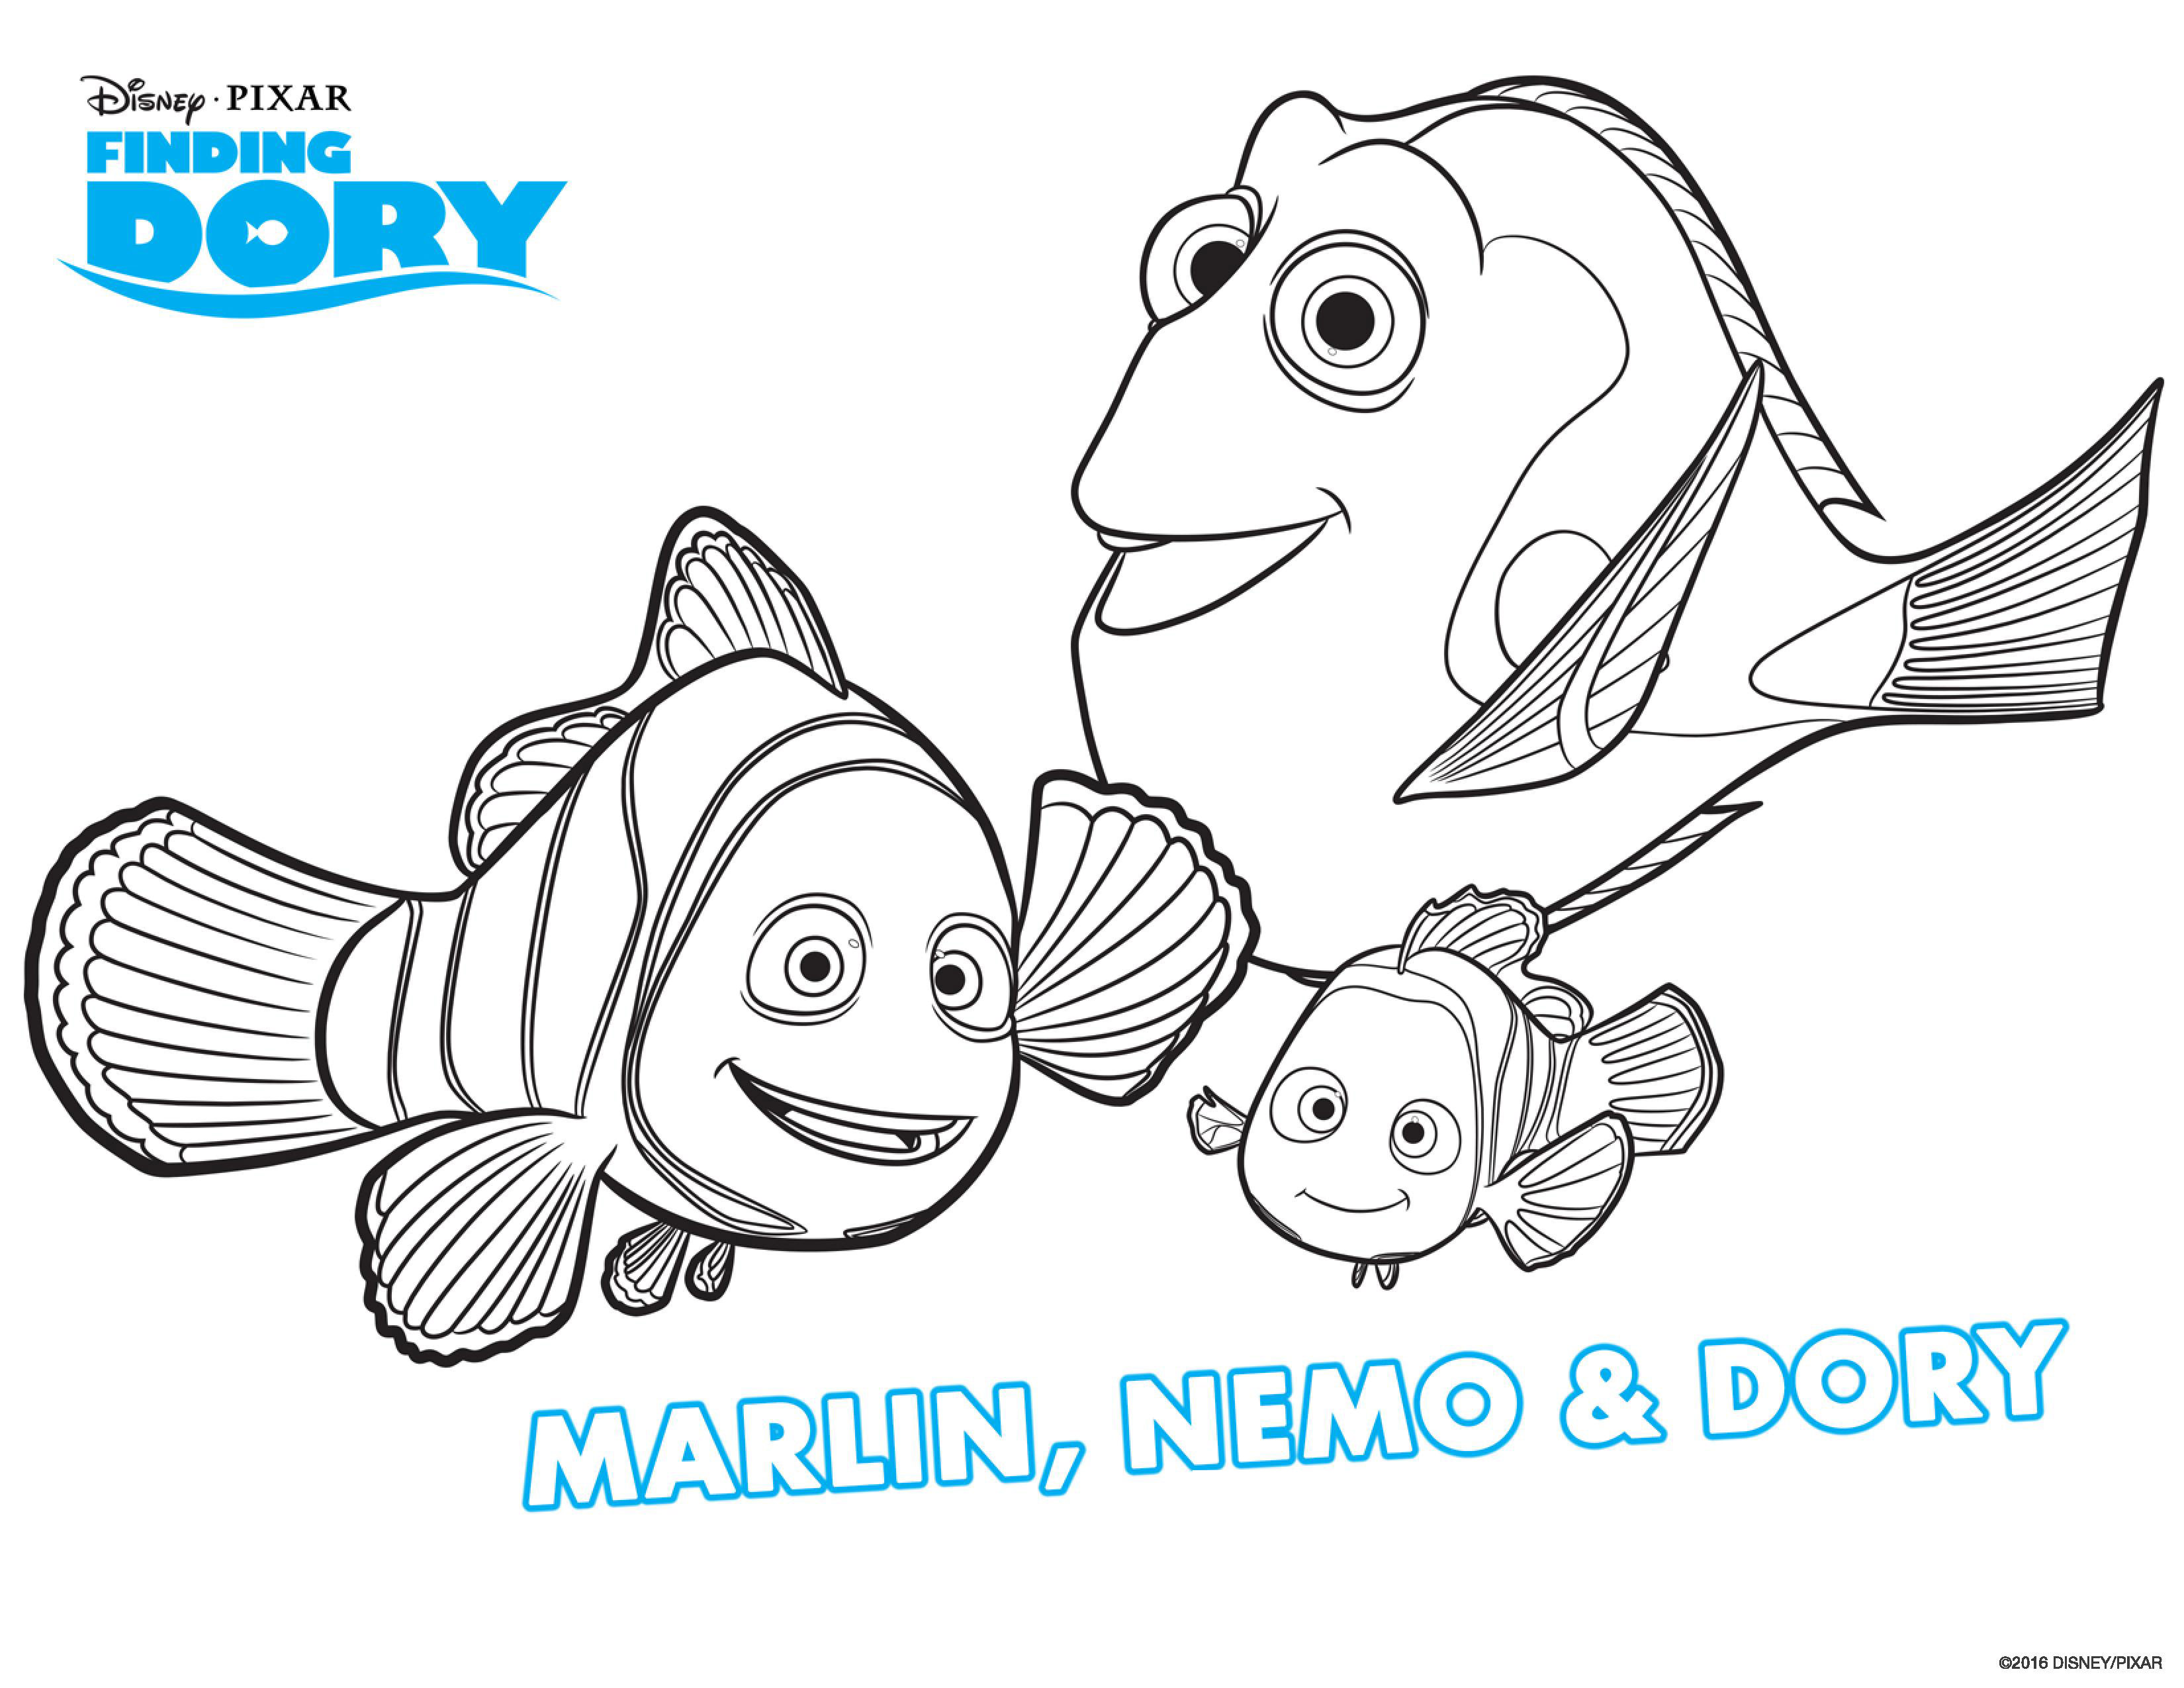 Dory, Marin et Nemo enfin à nouveau réunis